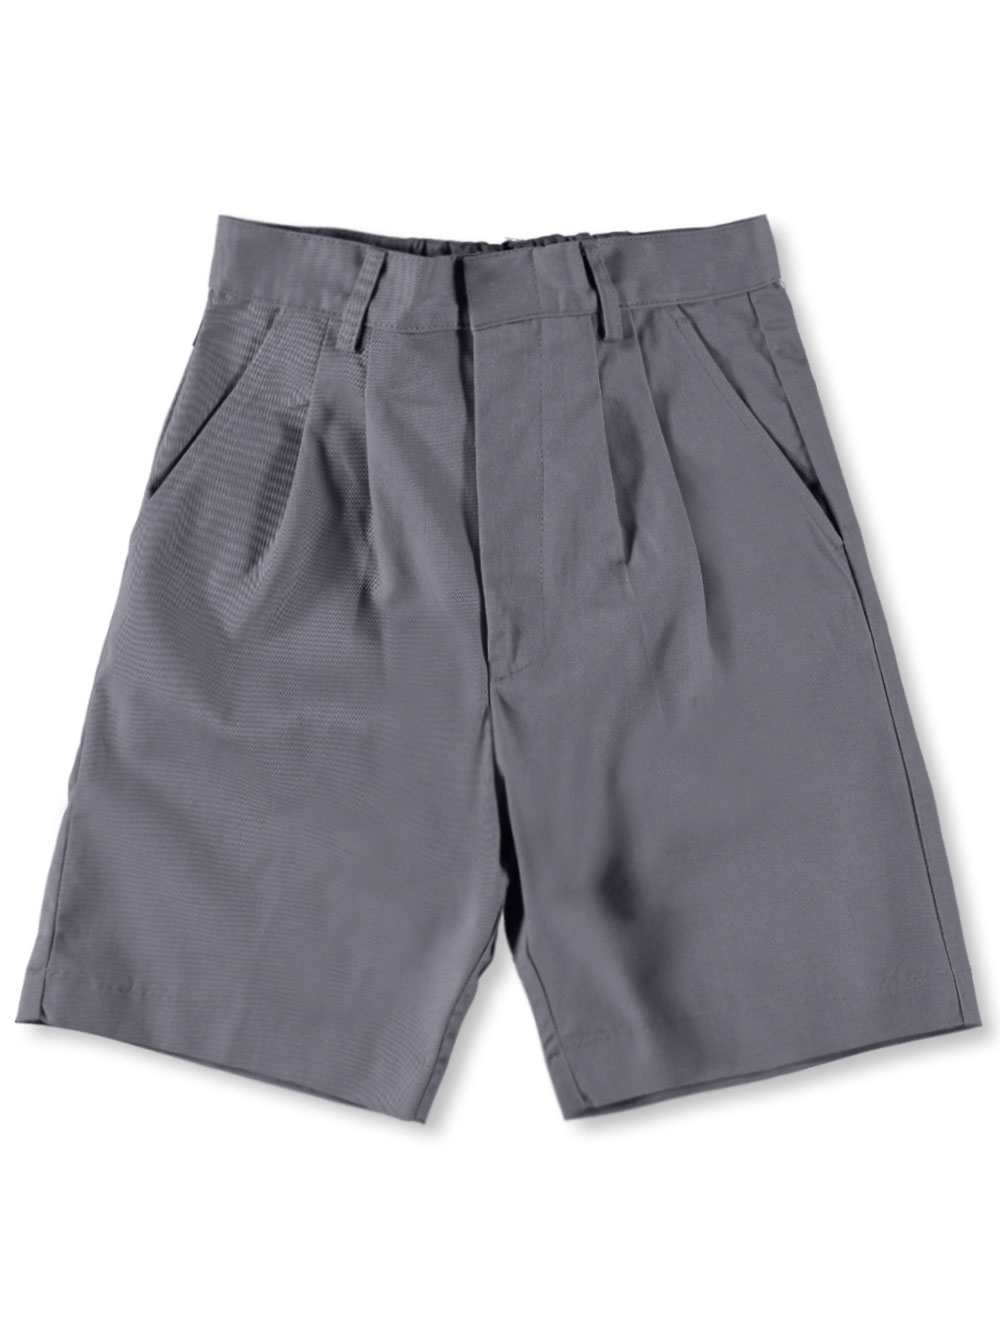 Universal Studios Girls Universal Basic Unisex Pleated Shorts (Sizes 8 - 20) - gray, 14